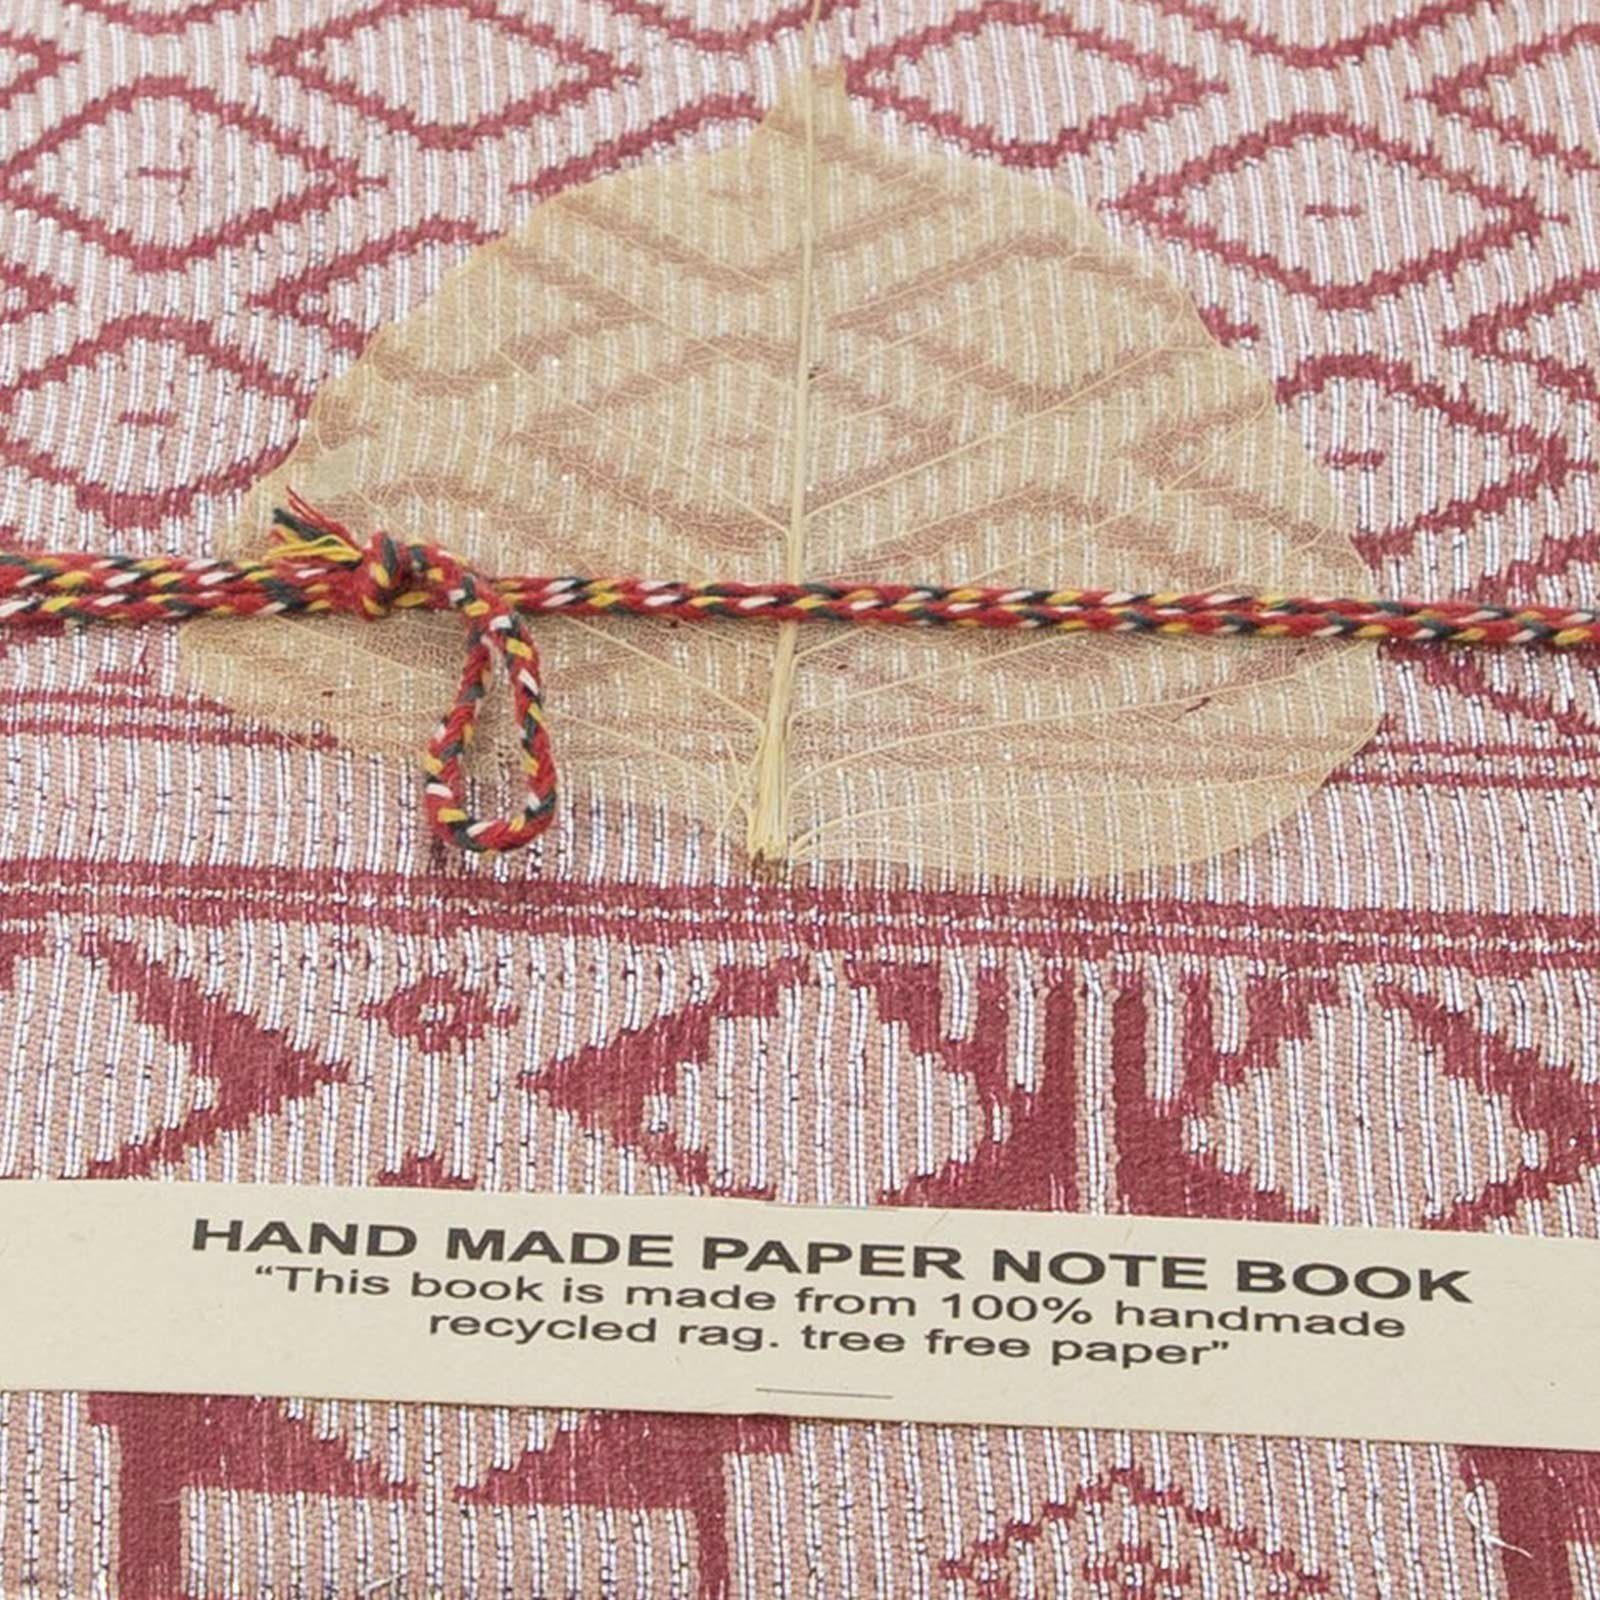 KUNST UND MAGIE Sari handgefertigt Poesie 12,5x17cm Baumwollpapier-Notizbuch Tagebuch Tagebuch